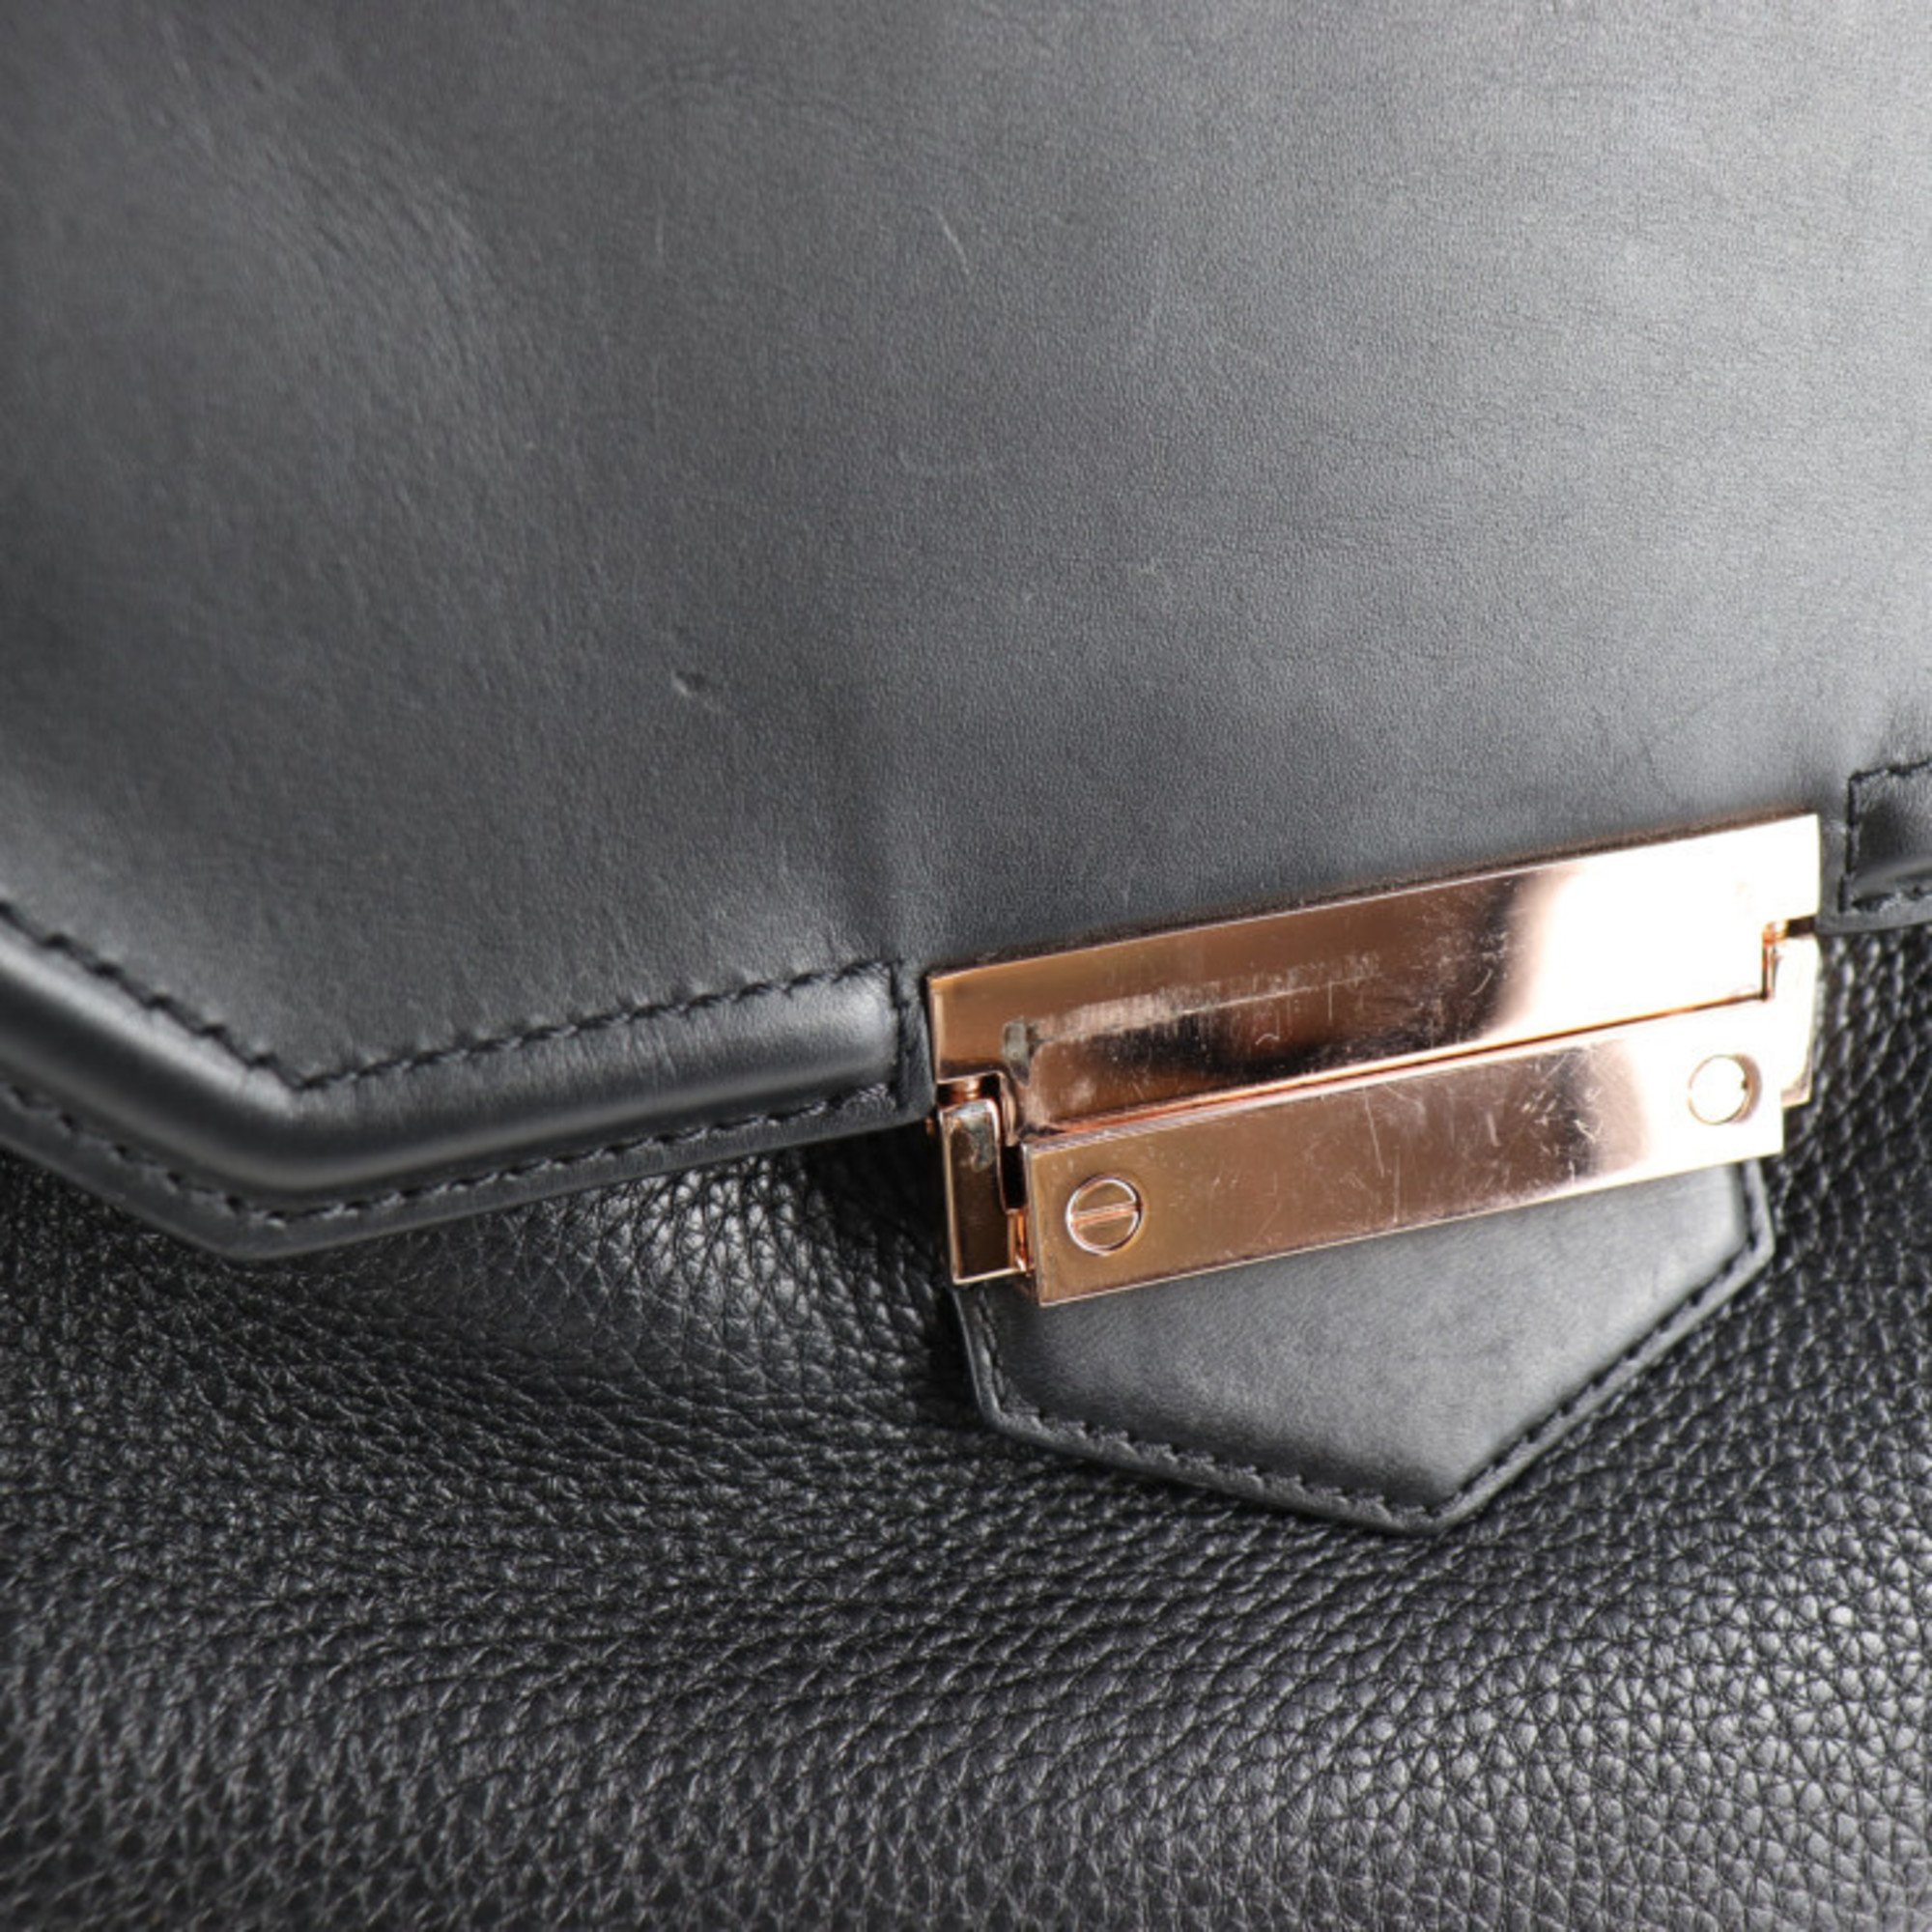 Alexander Wang Prisma Backpack/Daypack 204076 Leather Black Pink Gold Hardware Backpack